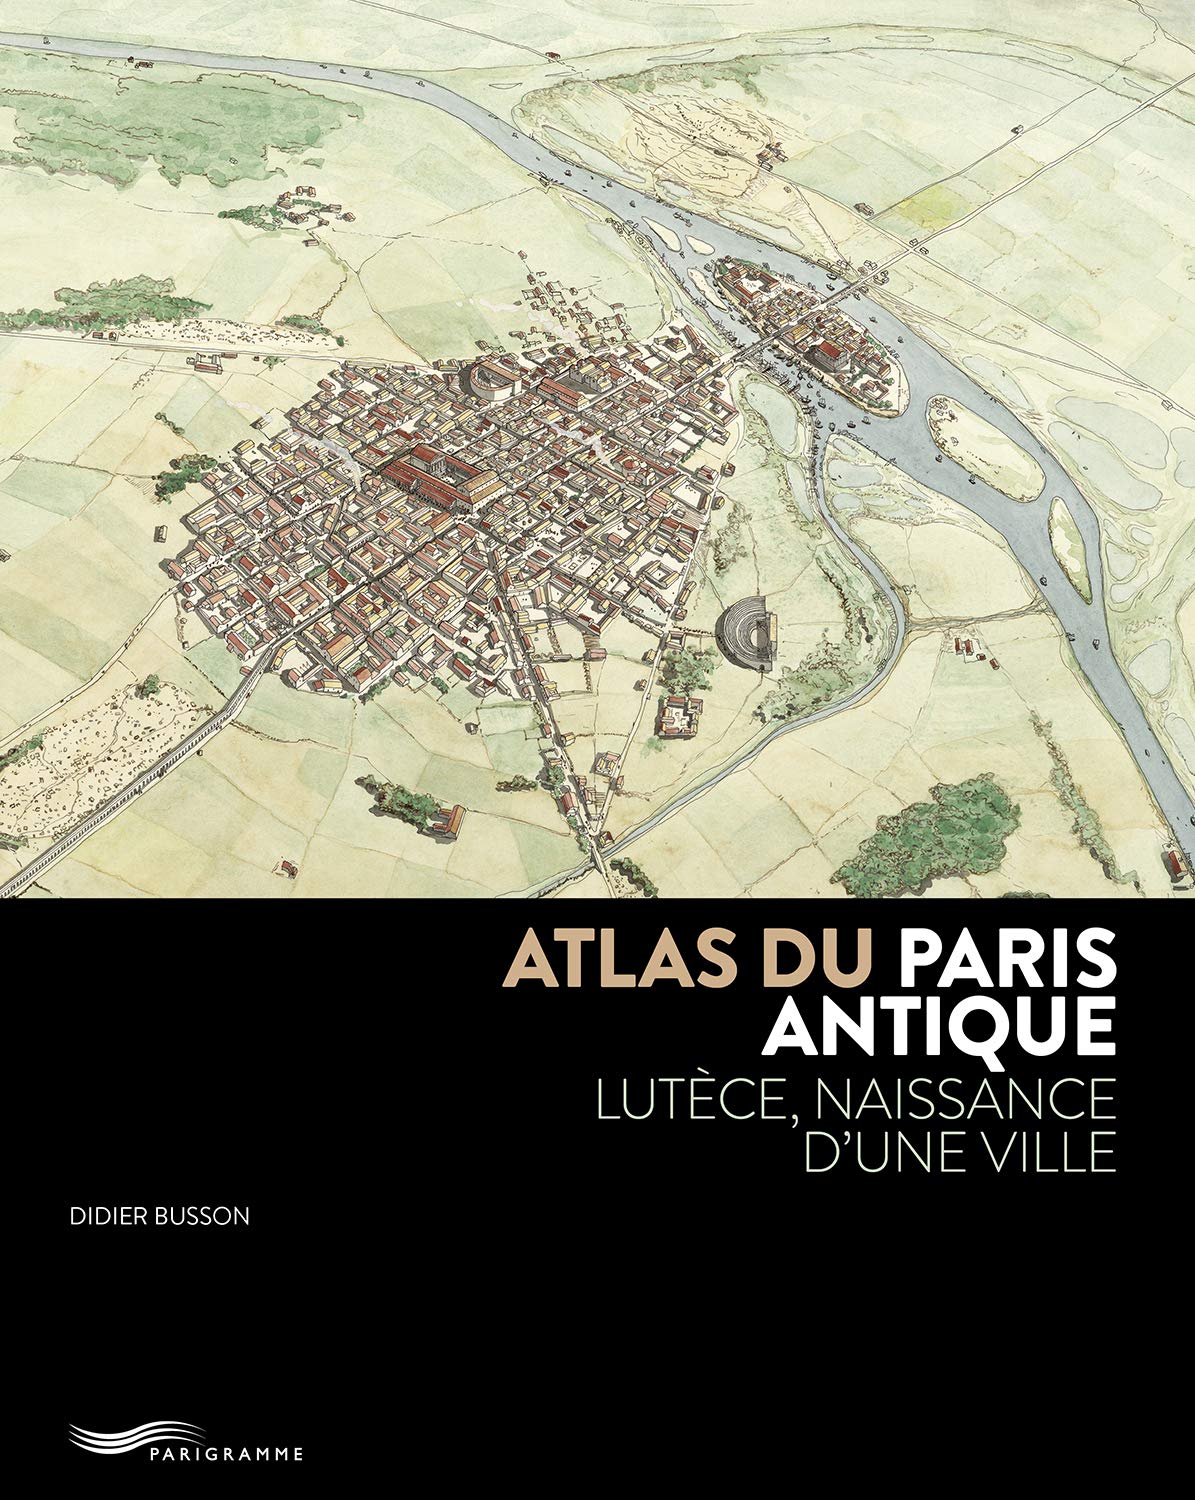 Atlas du Paris antique. Lutèce, naissance d'une ville, 2019, 175 p.